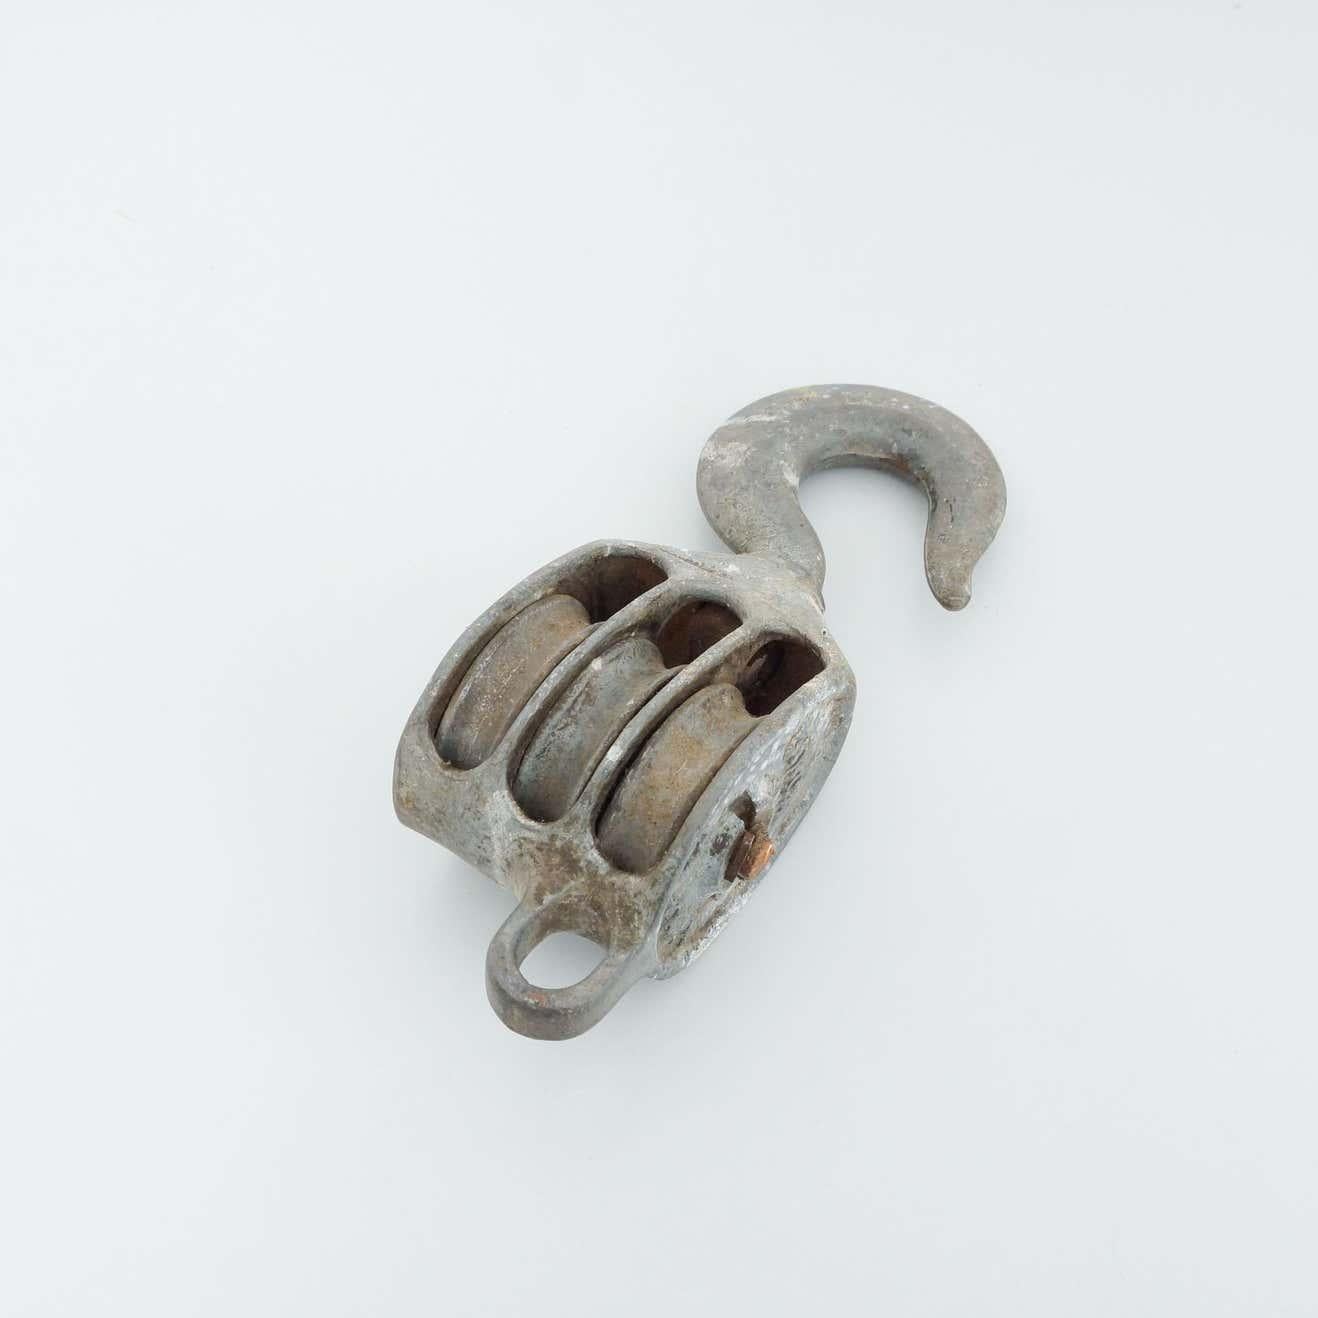 Crochet de poulie en métal ancien, vers 1960.
Par un fabricant inconnu, Espagne.

En état d'origine, avec une usure mineure conforme à l'âge et à l'utilisation, préservant une belle patine.

Matériaux :
Métal

Dimensions :
P 10 cm x L 14 cm